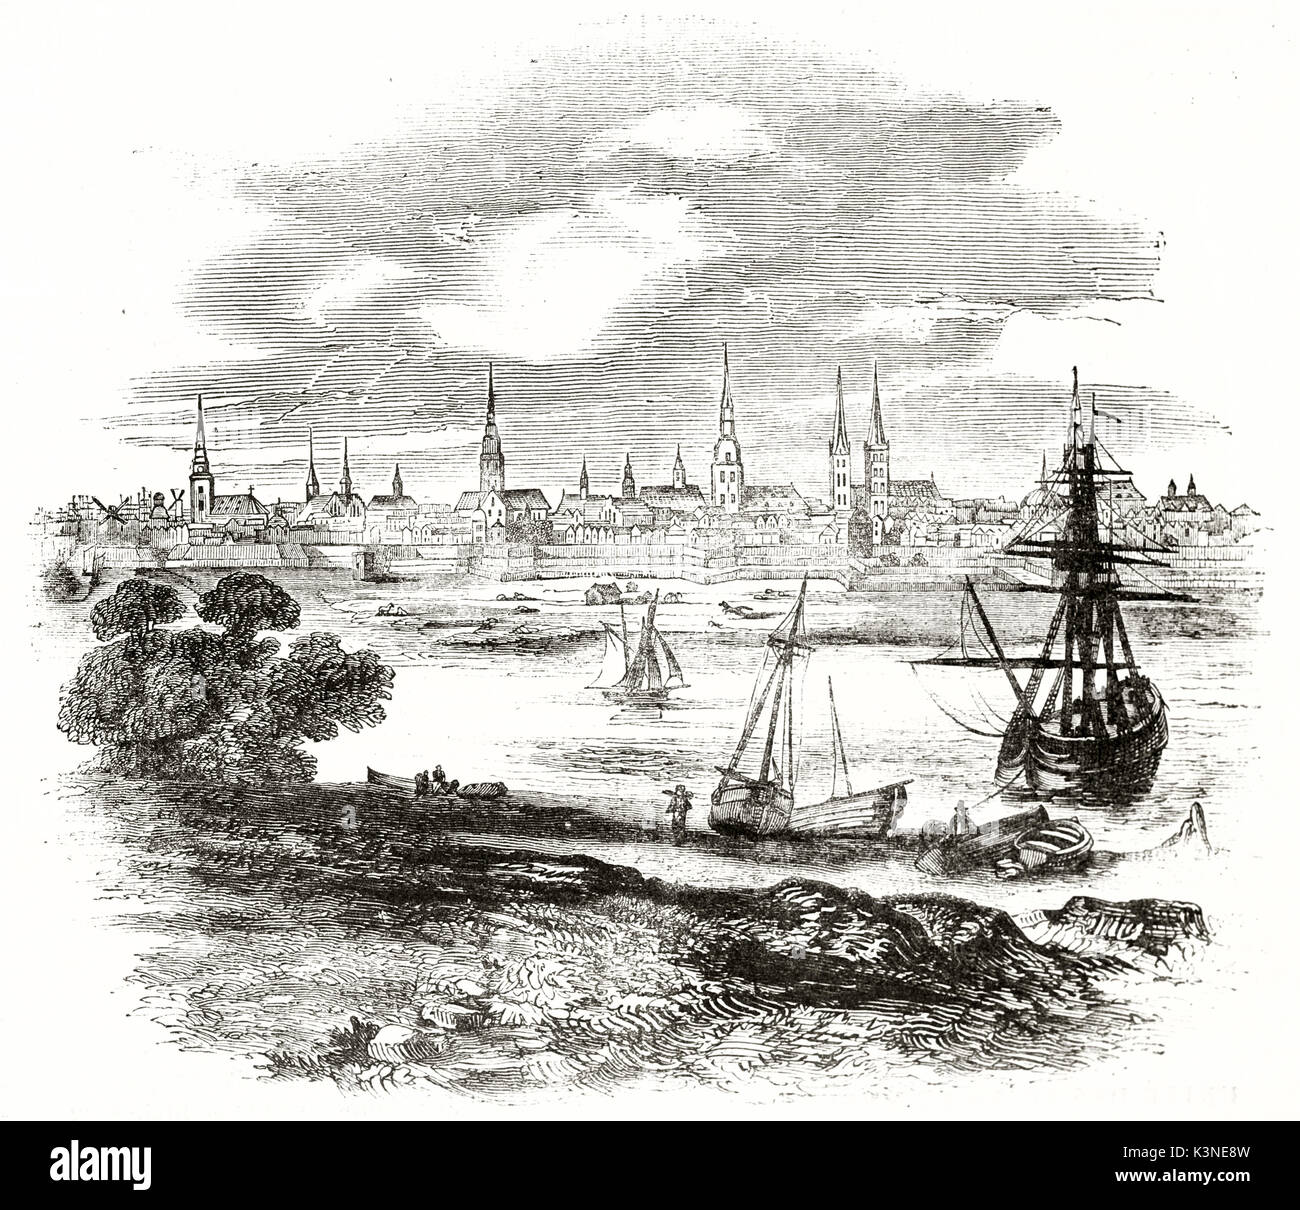 Alte Hamburger Stadtbild Blick von der Elbe Ufer. Alte Segel Boote über das Wasser. Von unbekannter Autor auf Magasin Pittoresque Paris 1839 veröffentlicht. Stockfoto